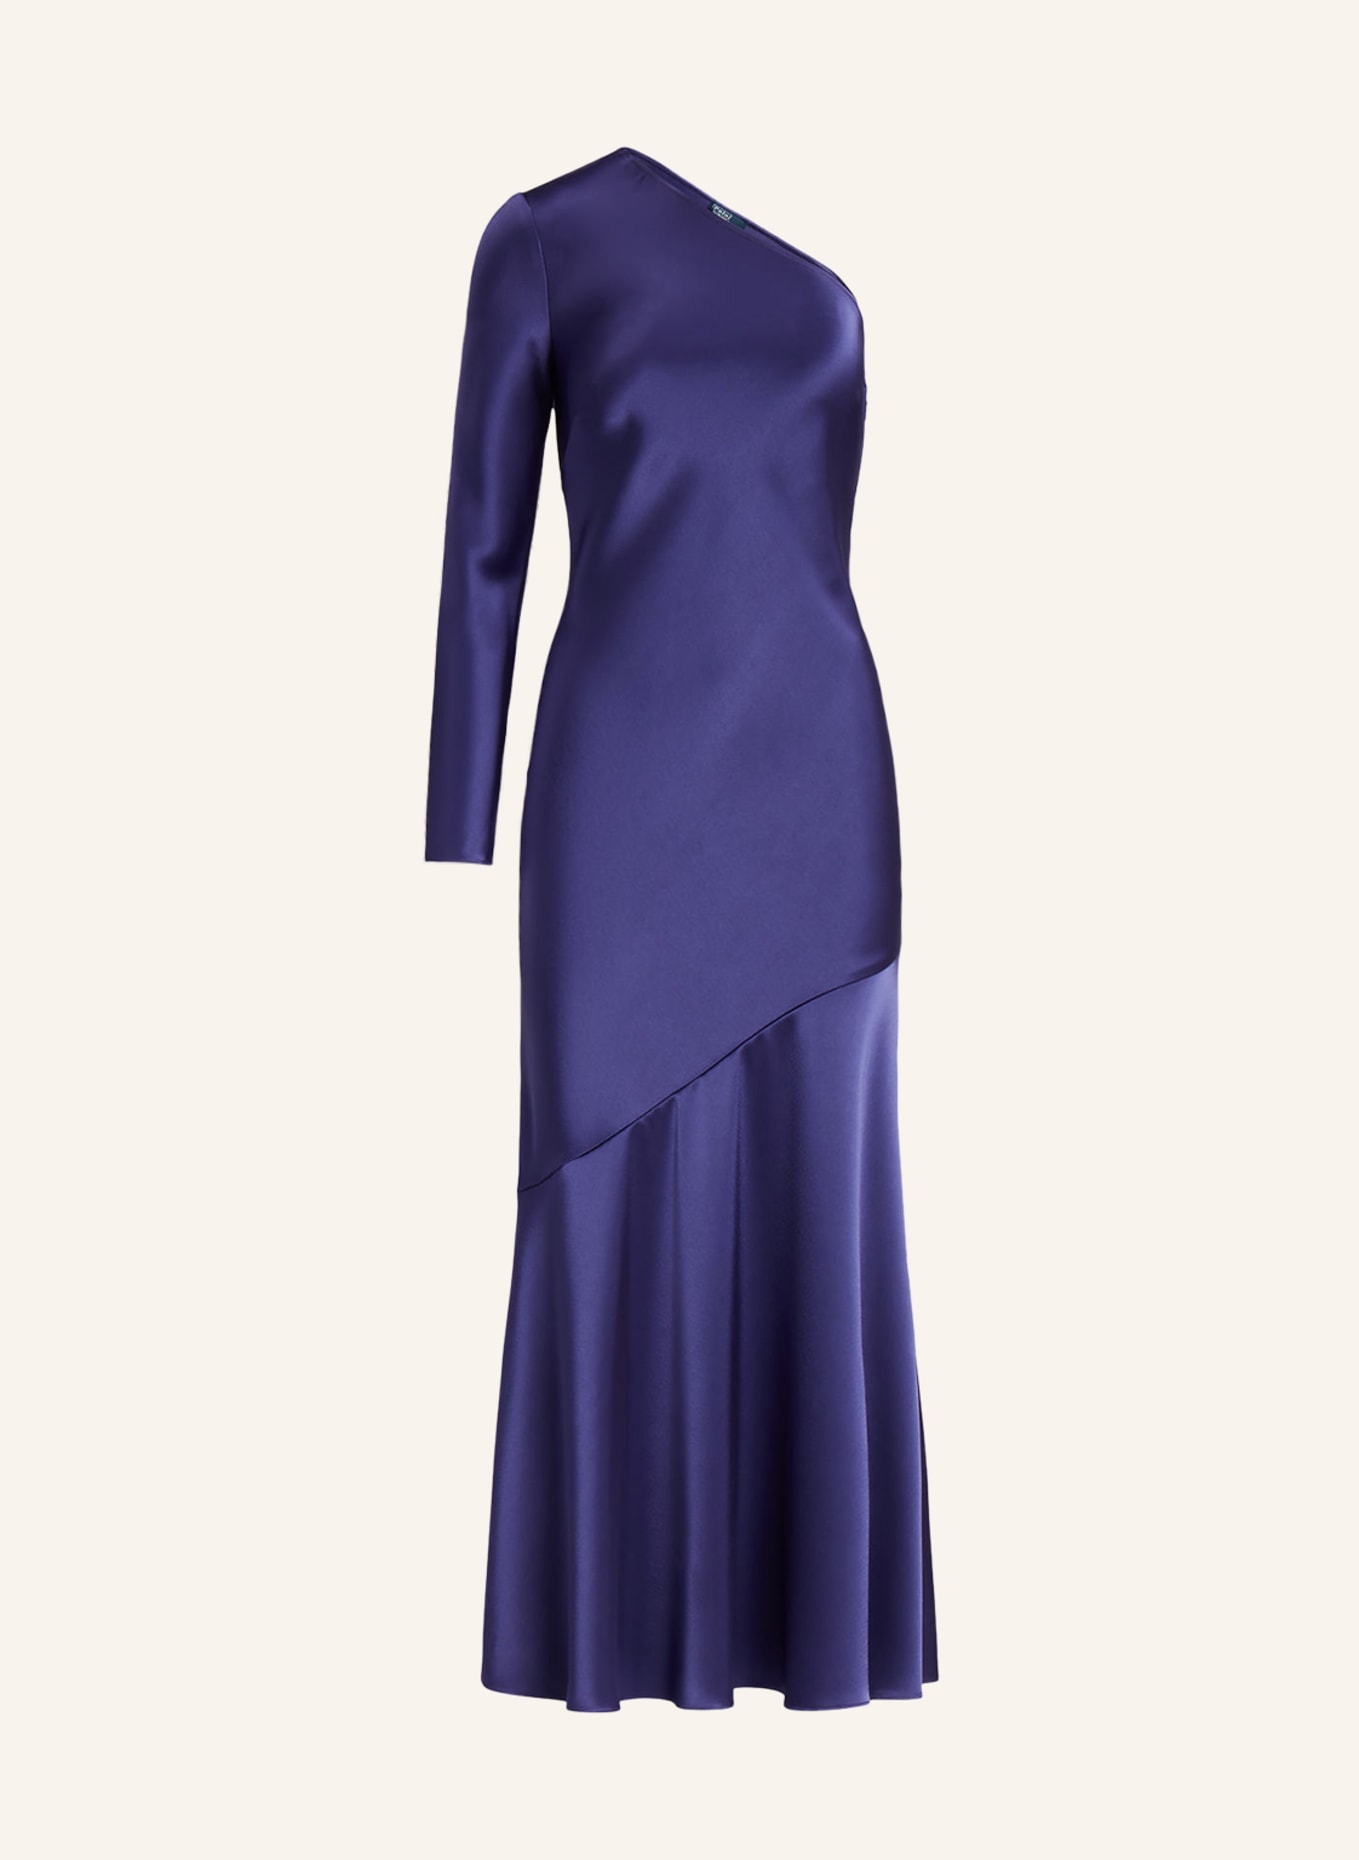 POLO RALPH LAUREN One-Shoulder-Kleid aus Satin, Farbe: DUNKELBLAU (Bild 1)